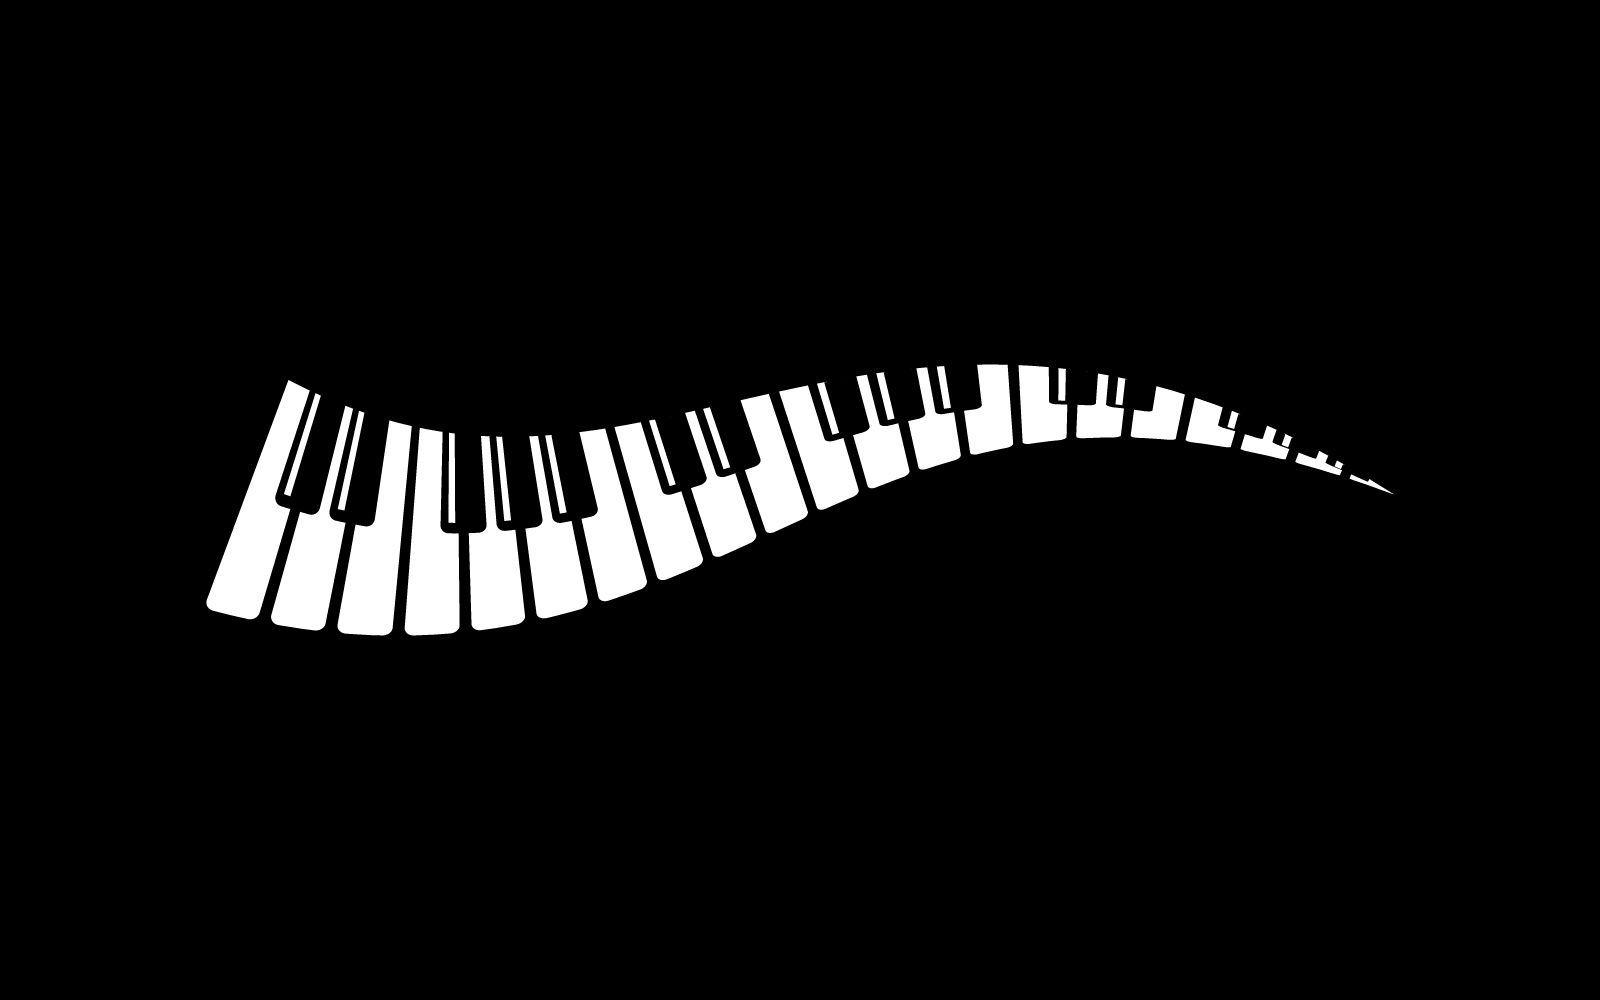 Piano illustration vector design template